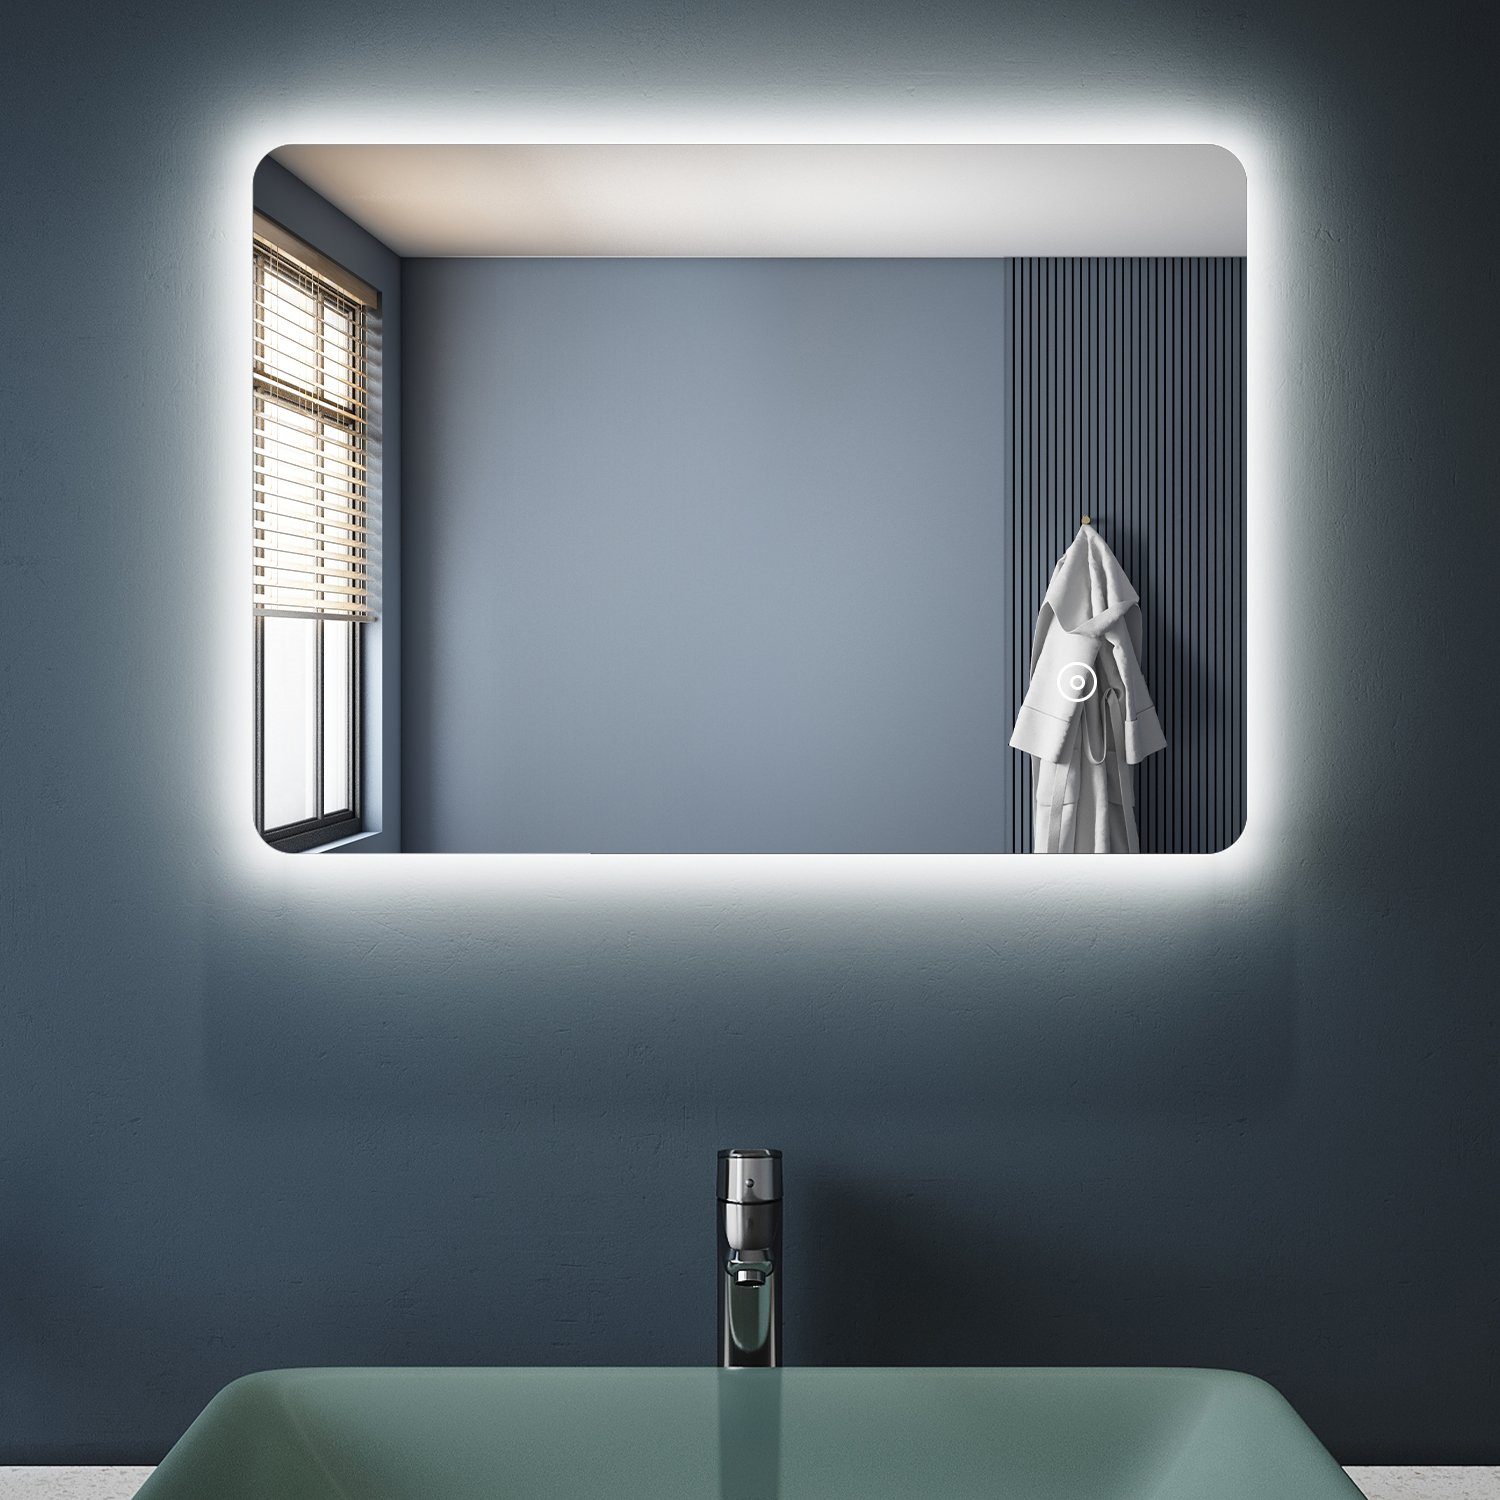 Badspiegel 50x70 cm mit Beleuchtung